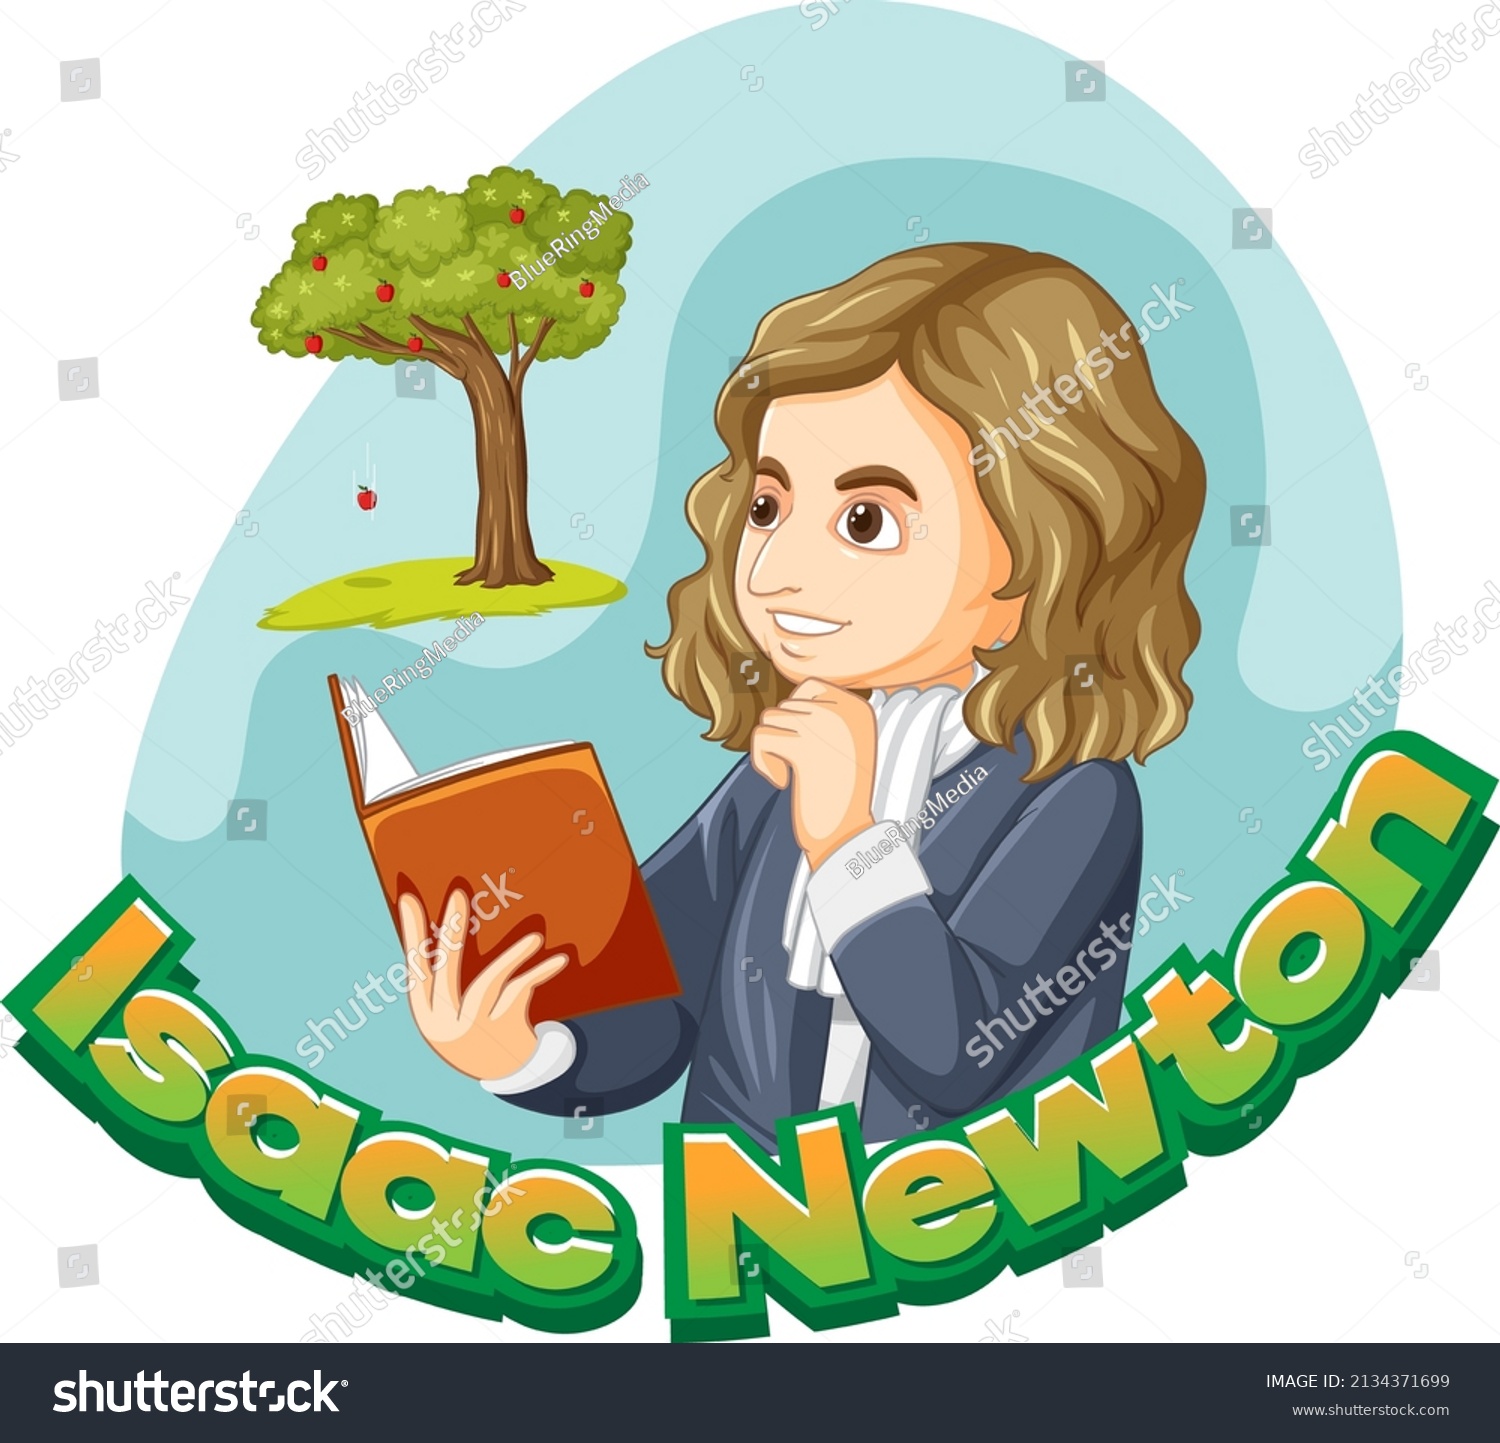 Portrait Isaac Newton Cartoon Style Illustration Stock Vector Royalty Free 2134371699 8959